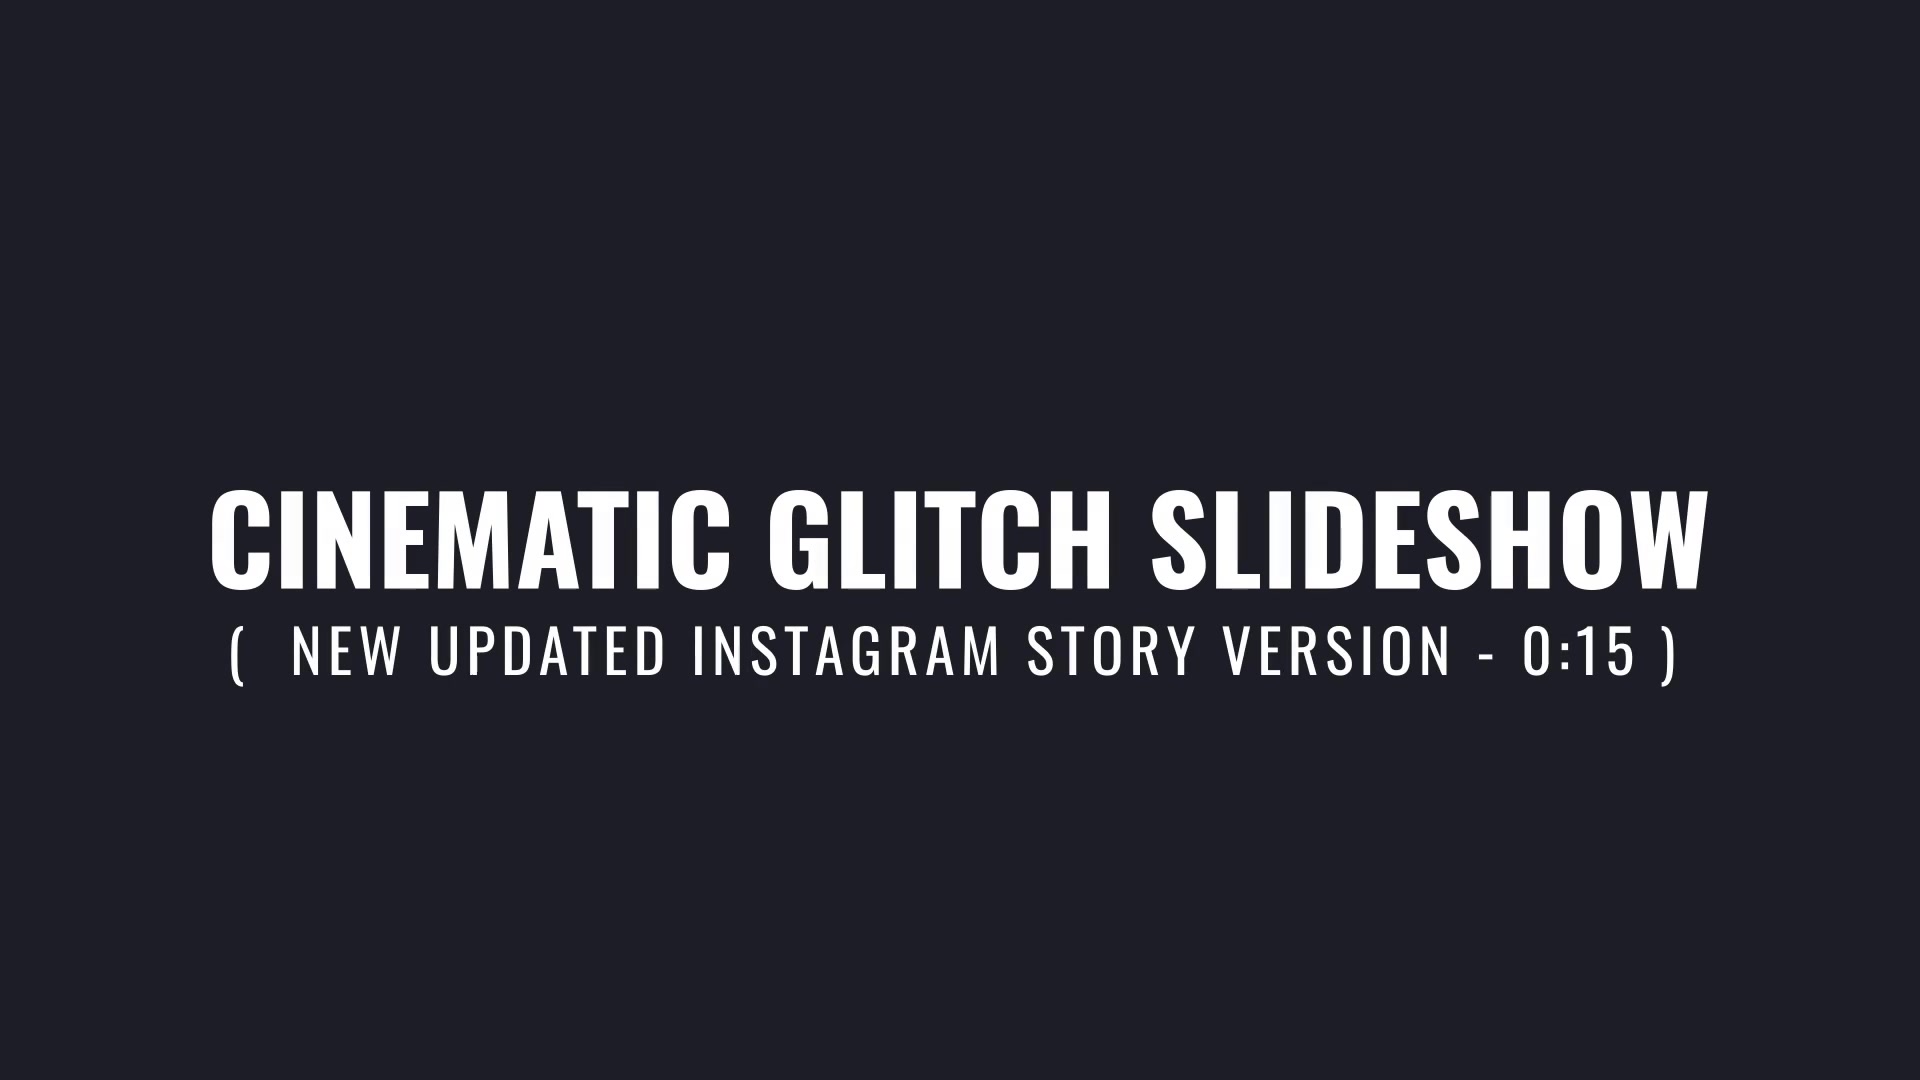 Cinematic Glitch Slideshow Videohive 38188964 Premiere Pro Image 11